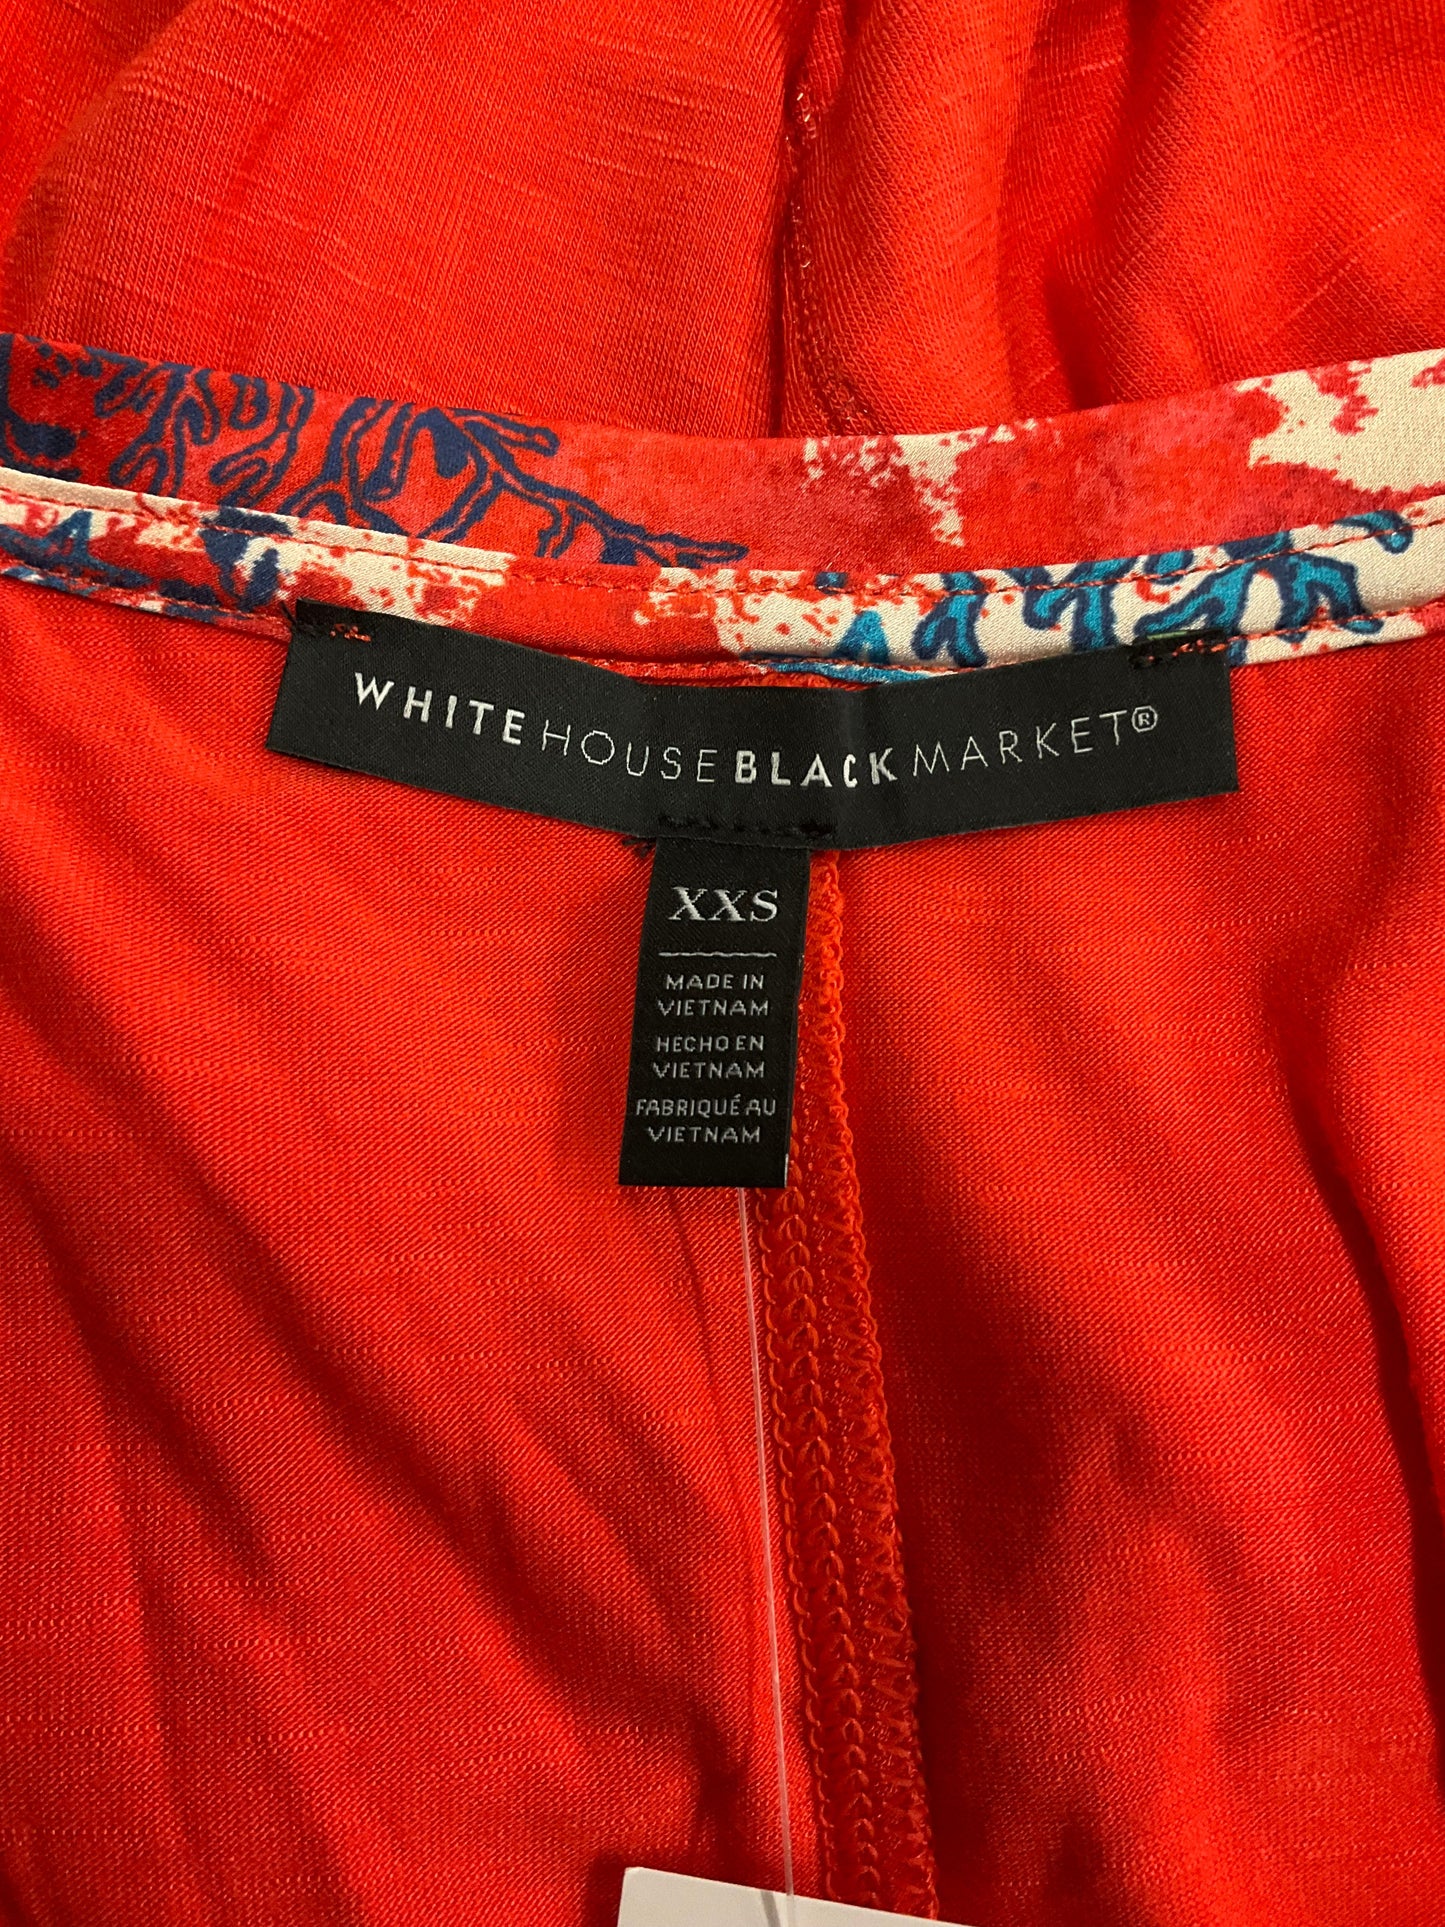 Nautical Print Top Sleeveless White House Black Market, Size Xxs